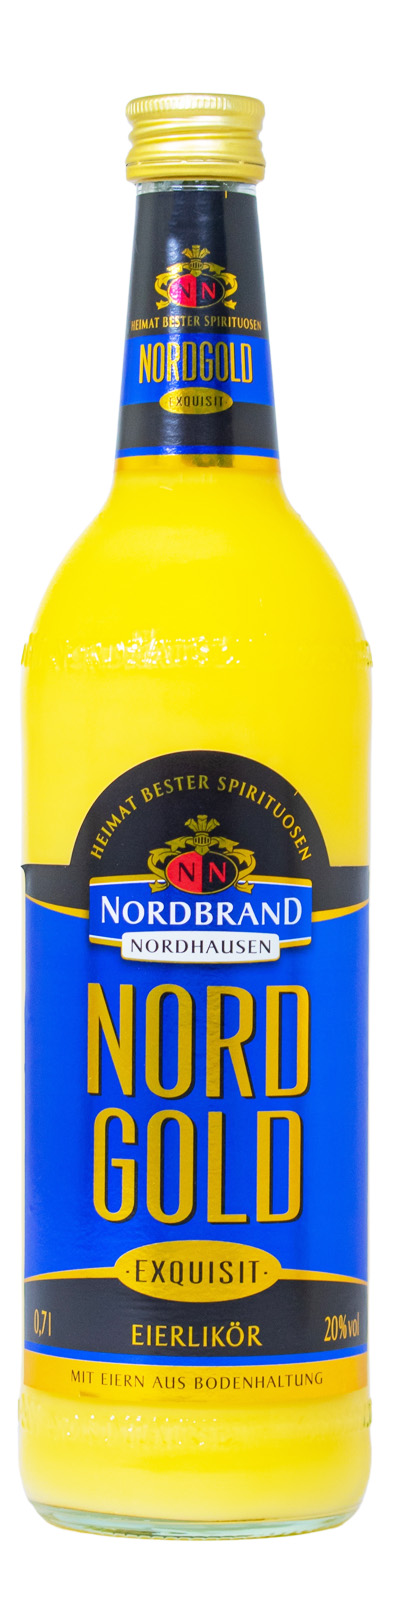 Nordgold Exquisit Eierlikör günstig kaufen